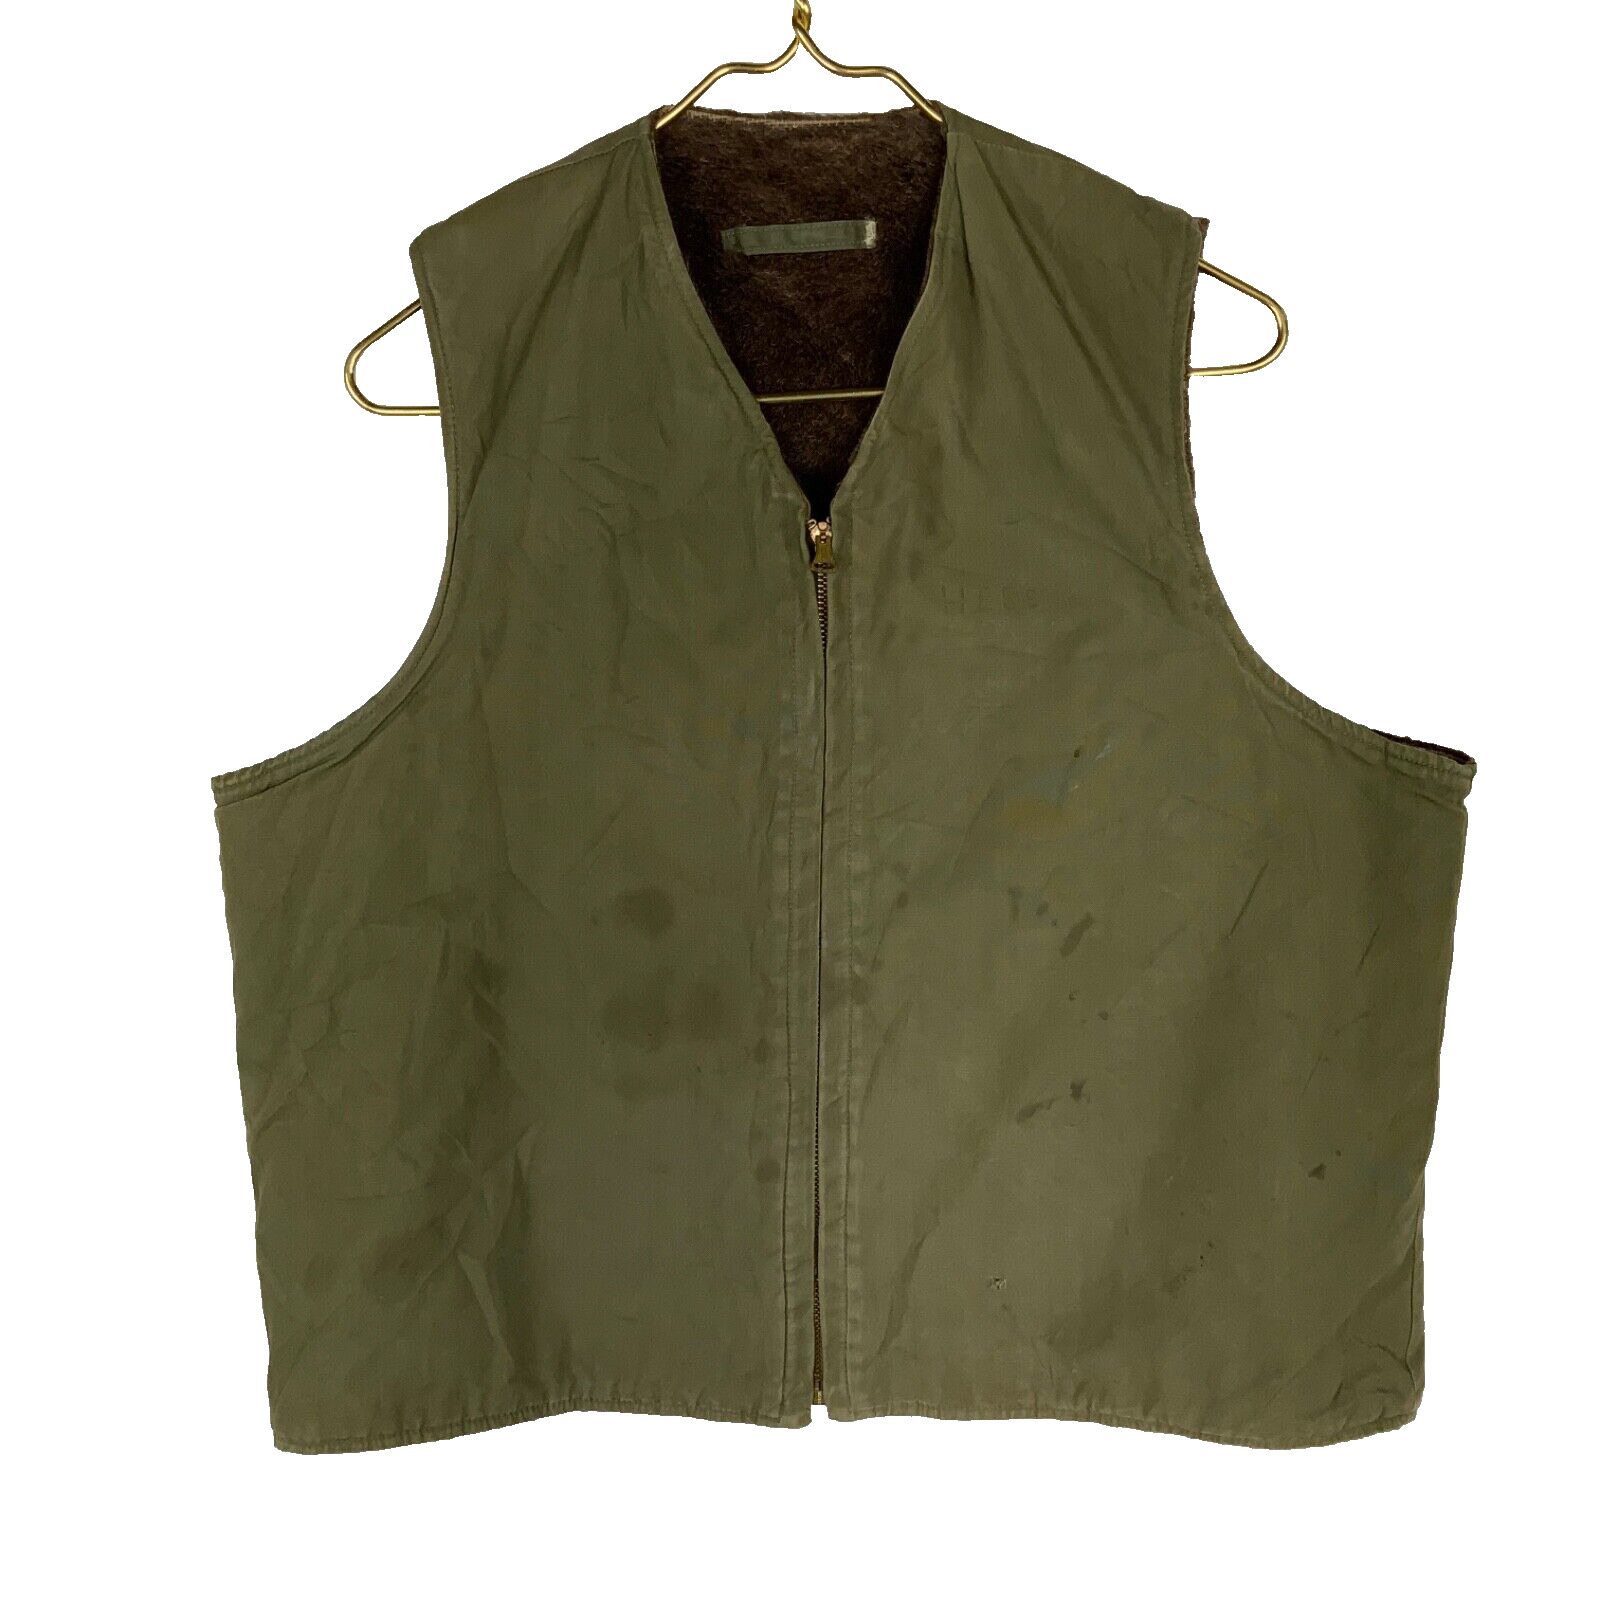 Vintage Us Military Vest Jacket Size Medium Green 1940s Alpaca Lined